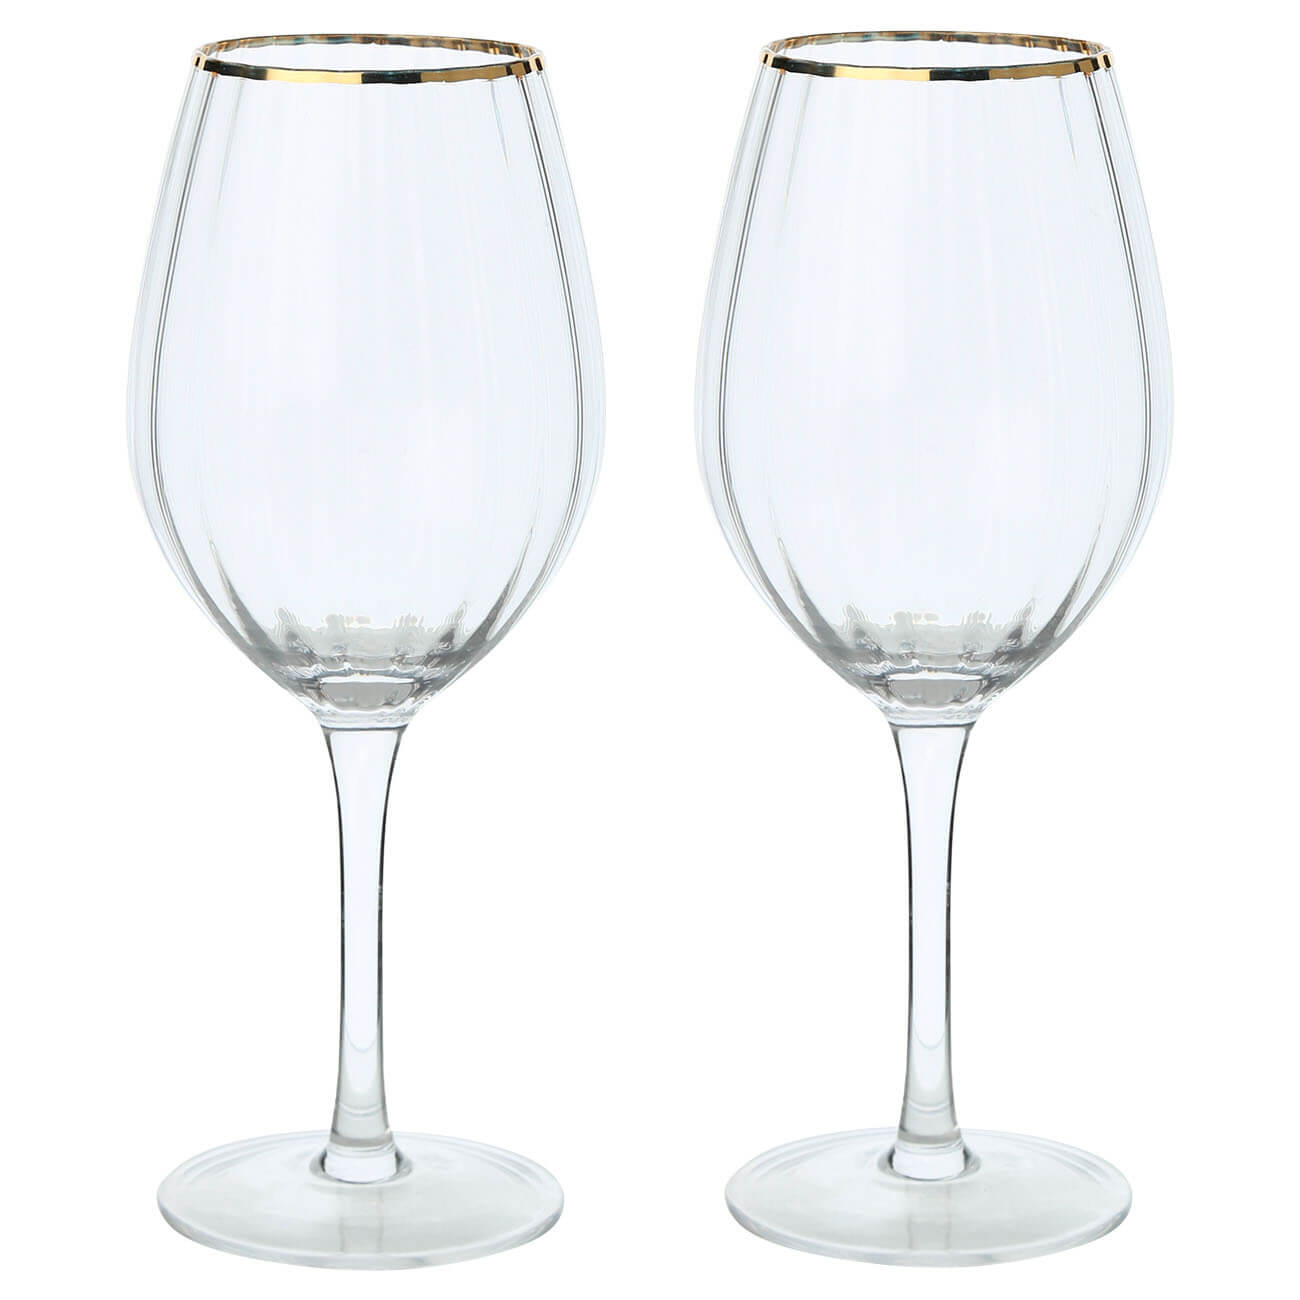 стакан 330 мл 2 шт стекло с золотистым кантом liomea gold Бокал для вина, 530 мл, 2 шт, стекло, с золотистым кантом, Lombardy R Gold